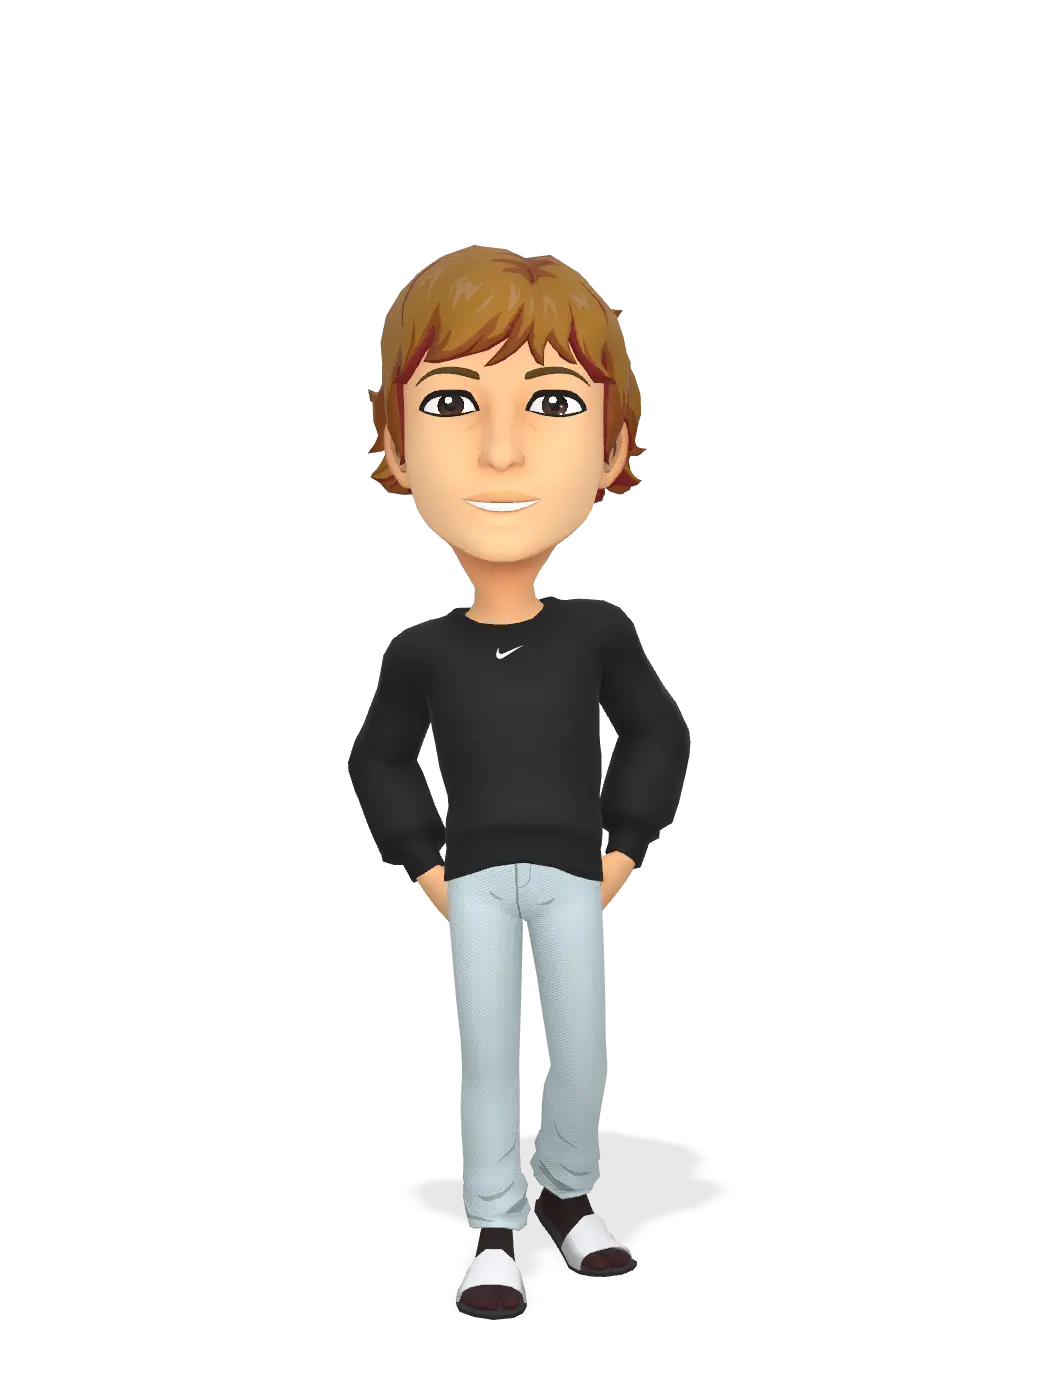 3D Bitmoji for boyd4747 avatar